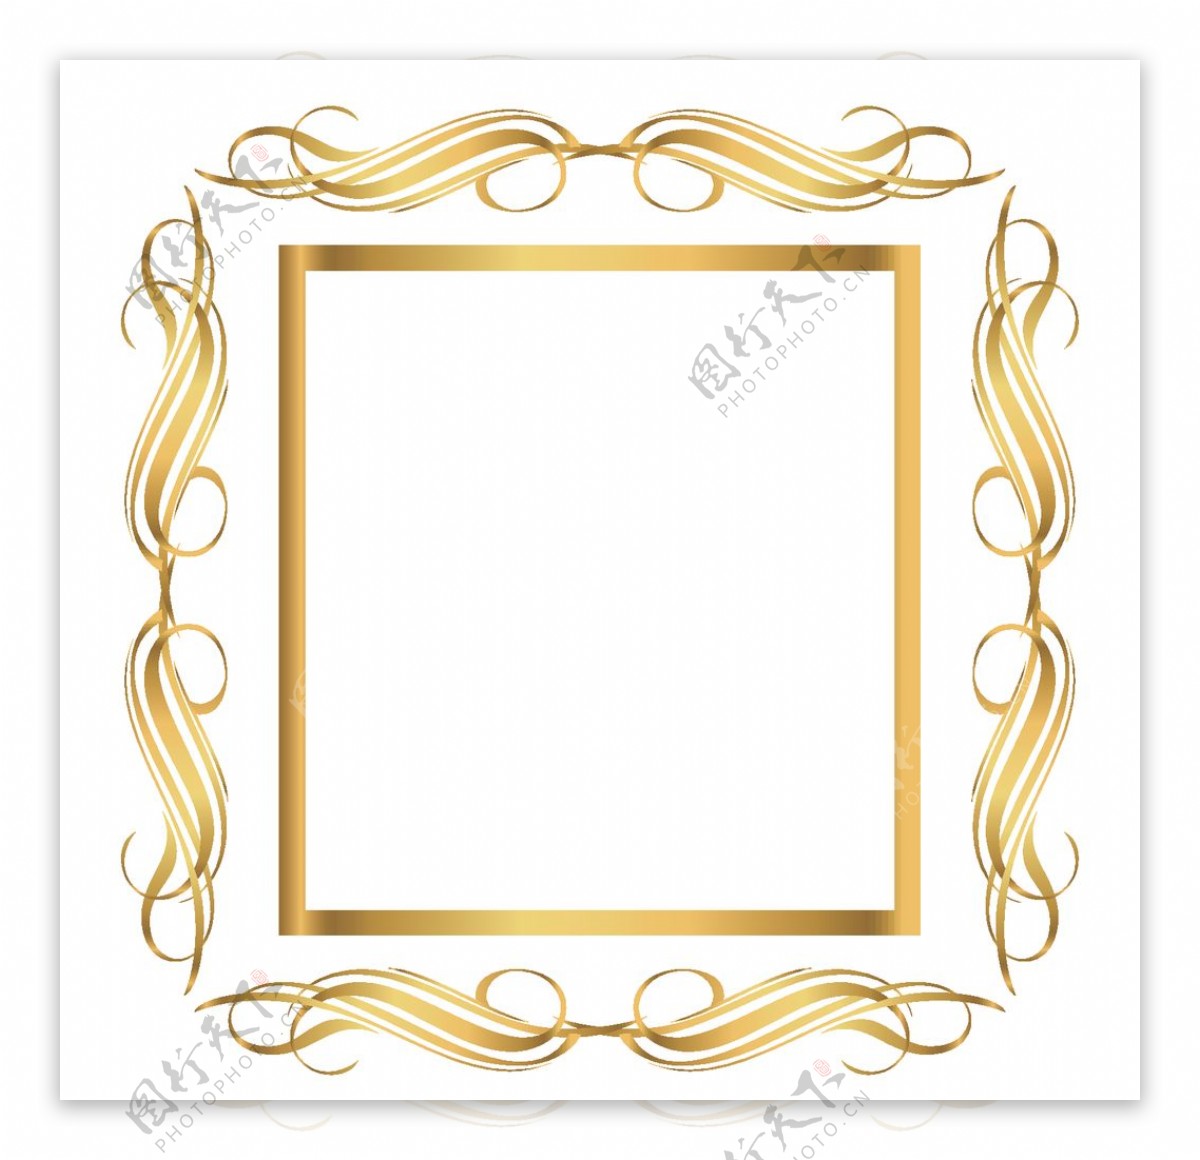 创意金色花纹边框设计